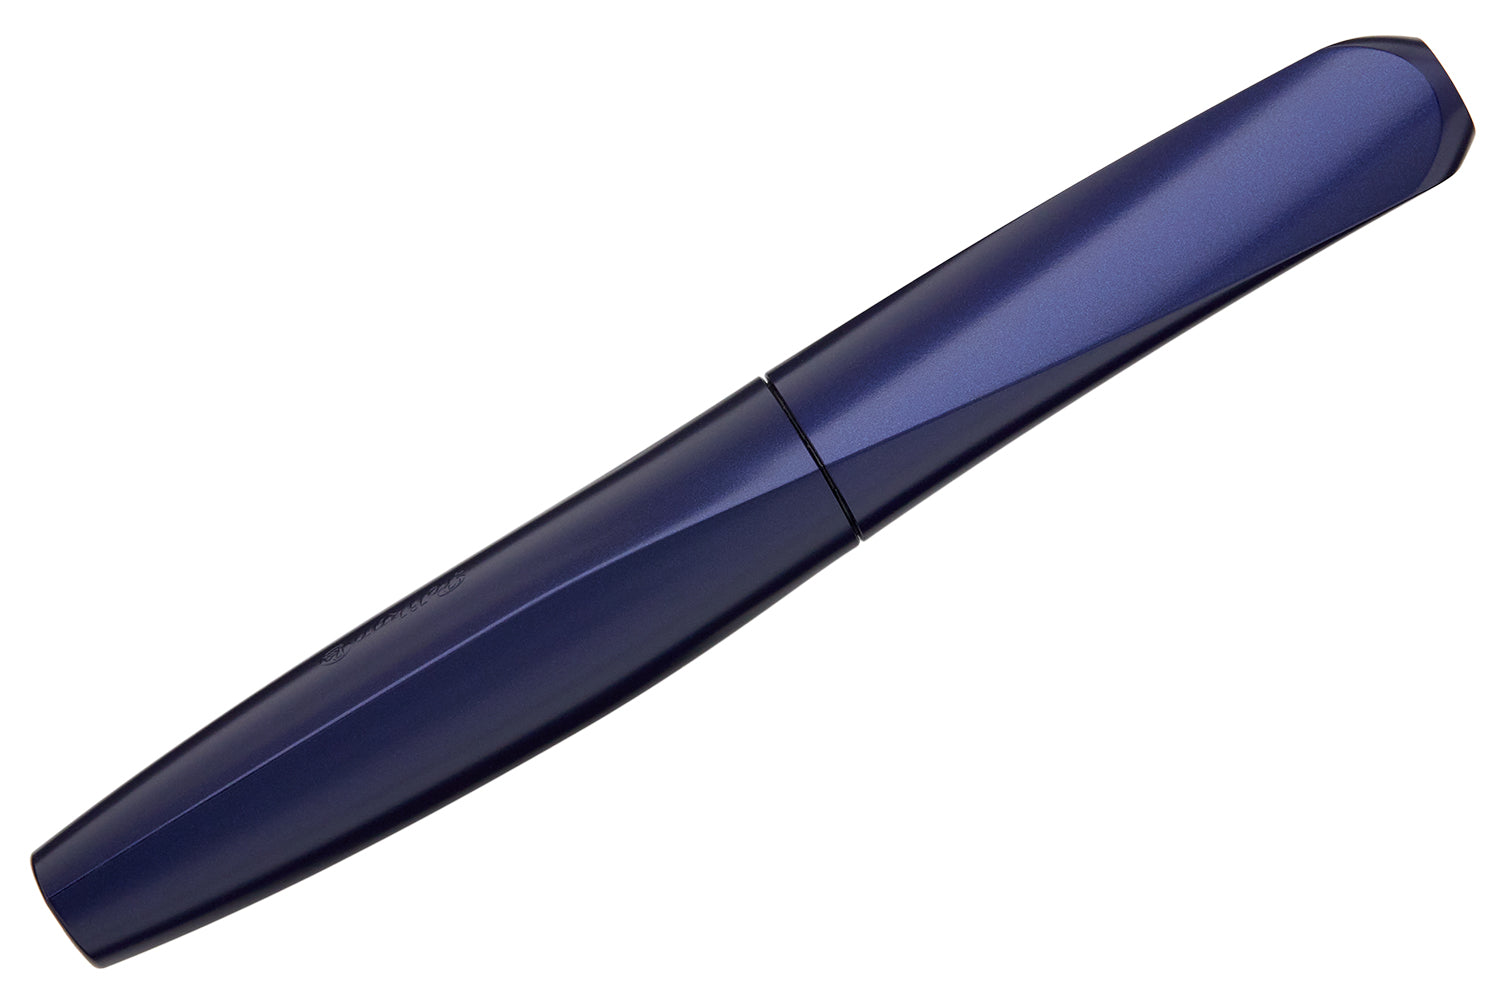 Nite Glow in the Dark Grip Pen